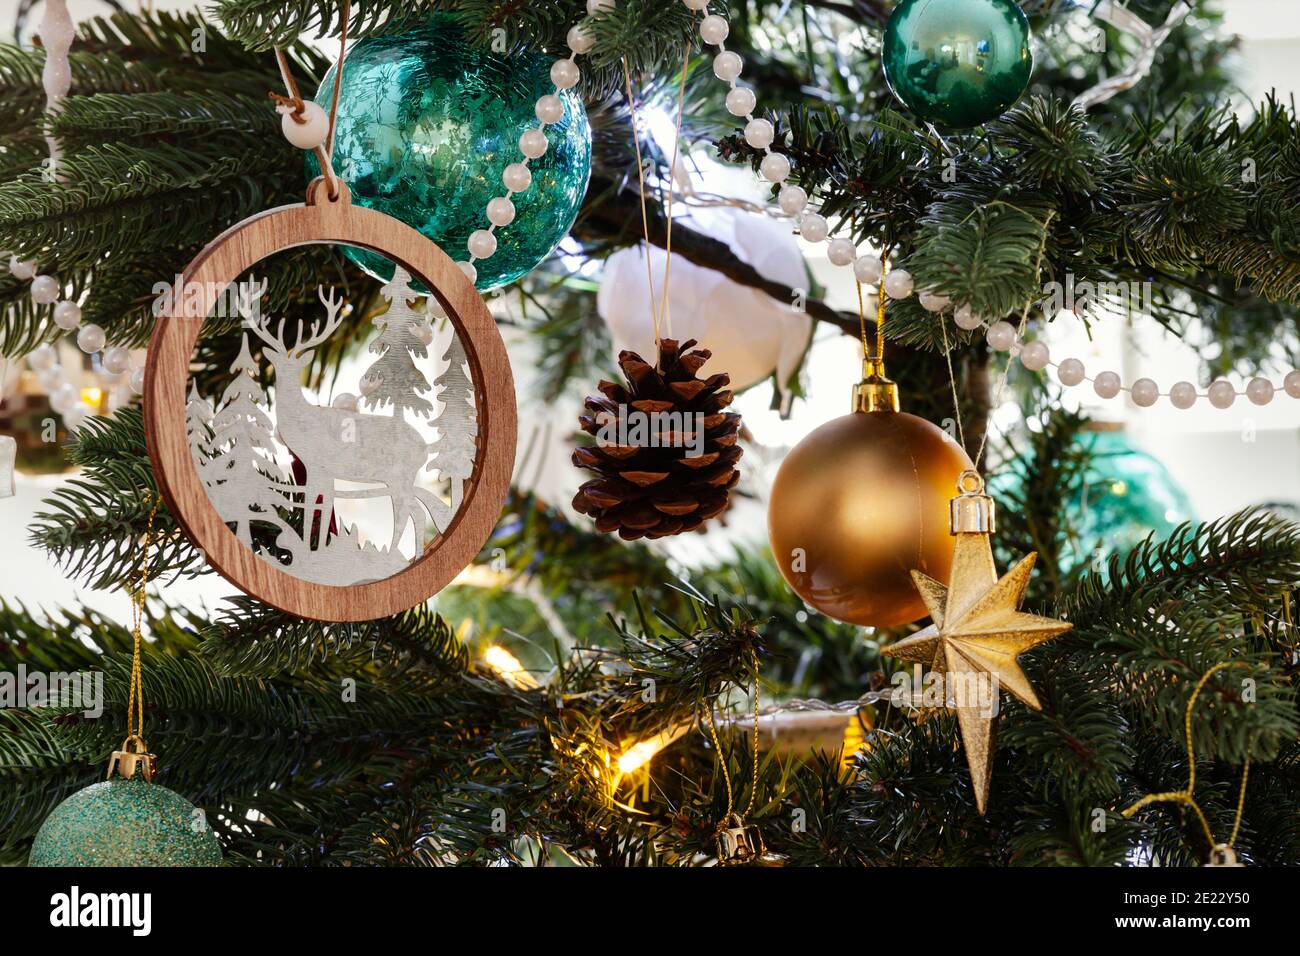 Nordische weihnachtsbaumschmuck, mit goldenen und tealfarbenen Dekorationen und weißen Perlen, die alle vom Baum hängen Stockfoto